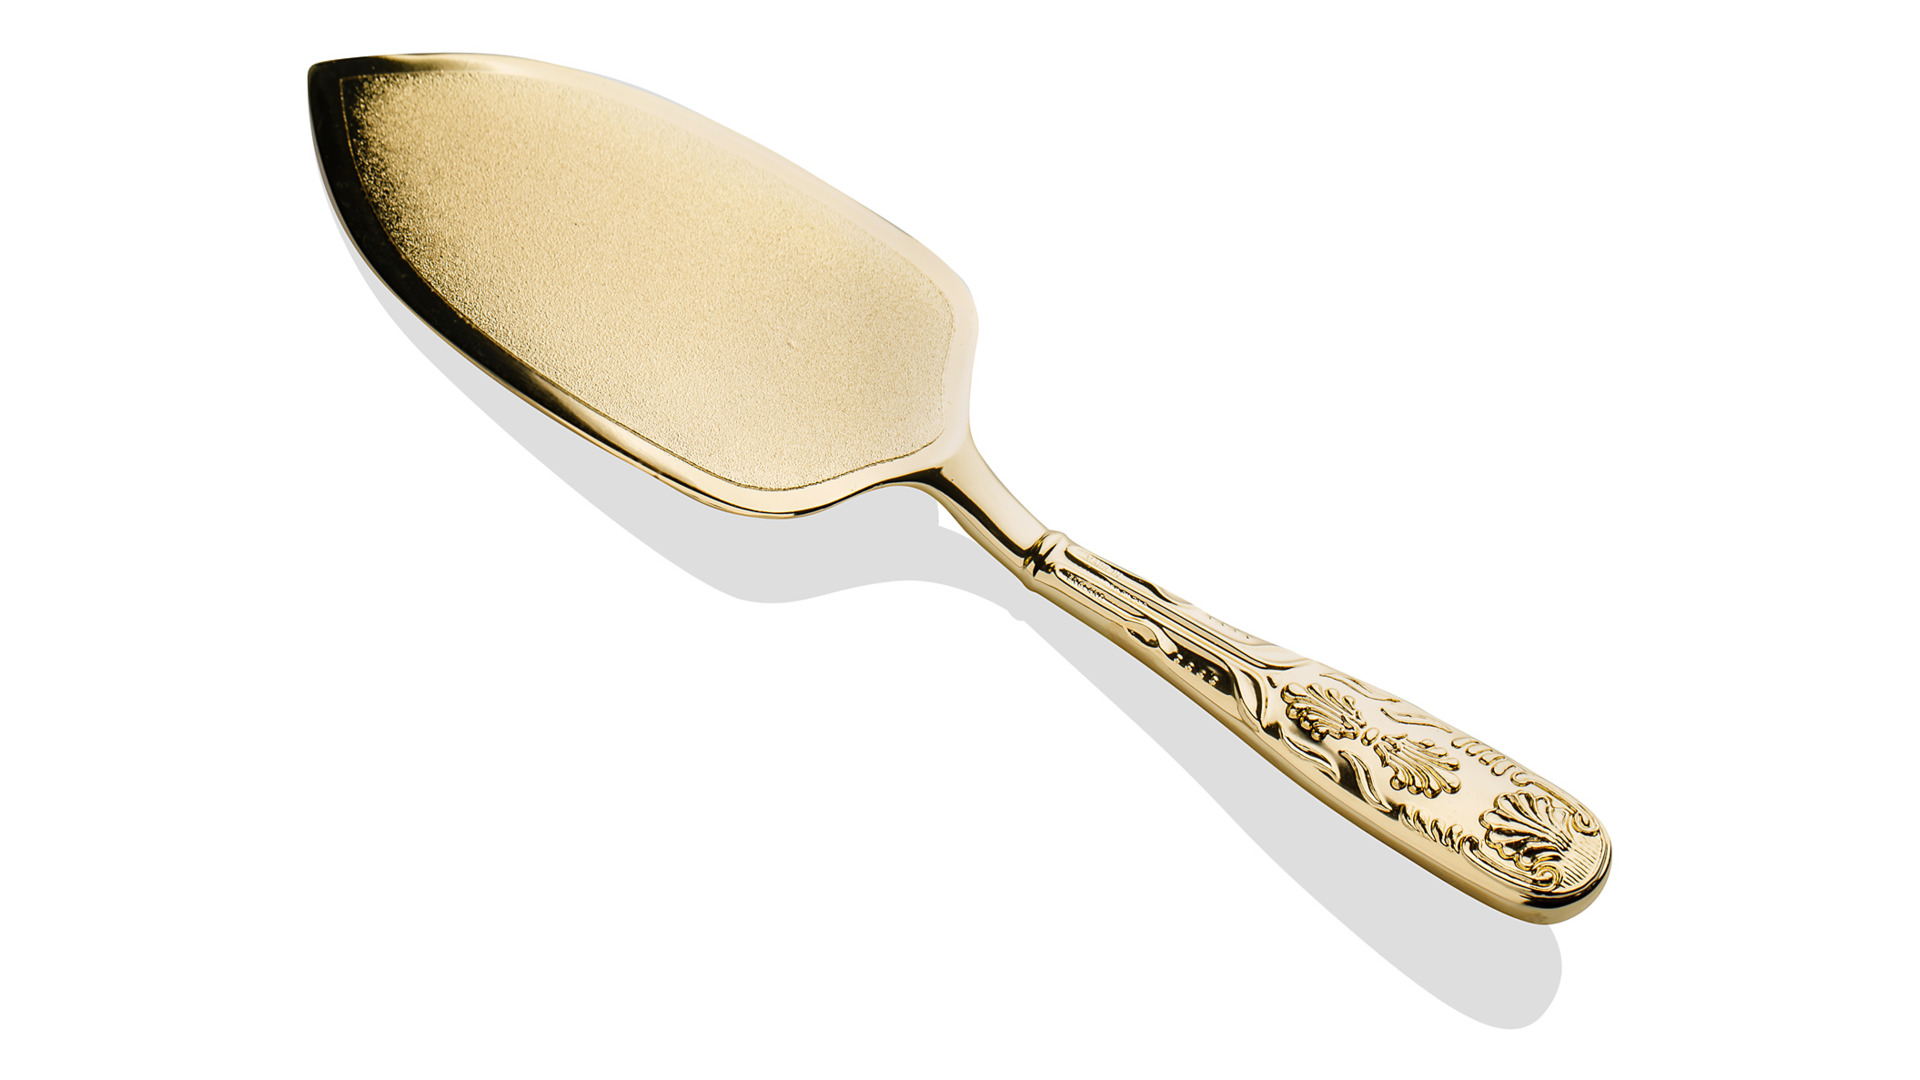 Набор для торта Queen Anne 2 предмета, нож 31 см и лопатка 26 см, золотой цвет, сталь